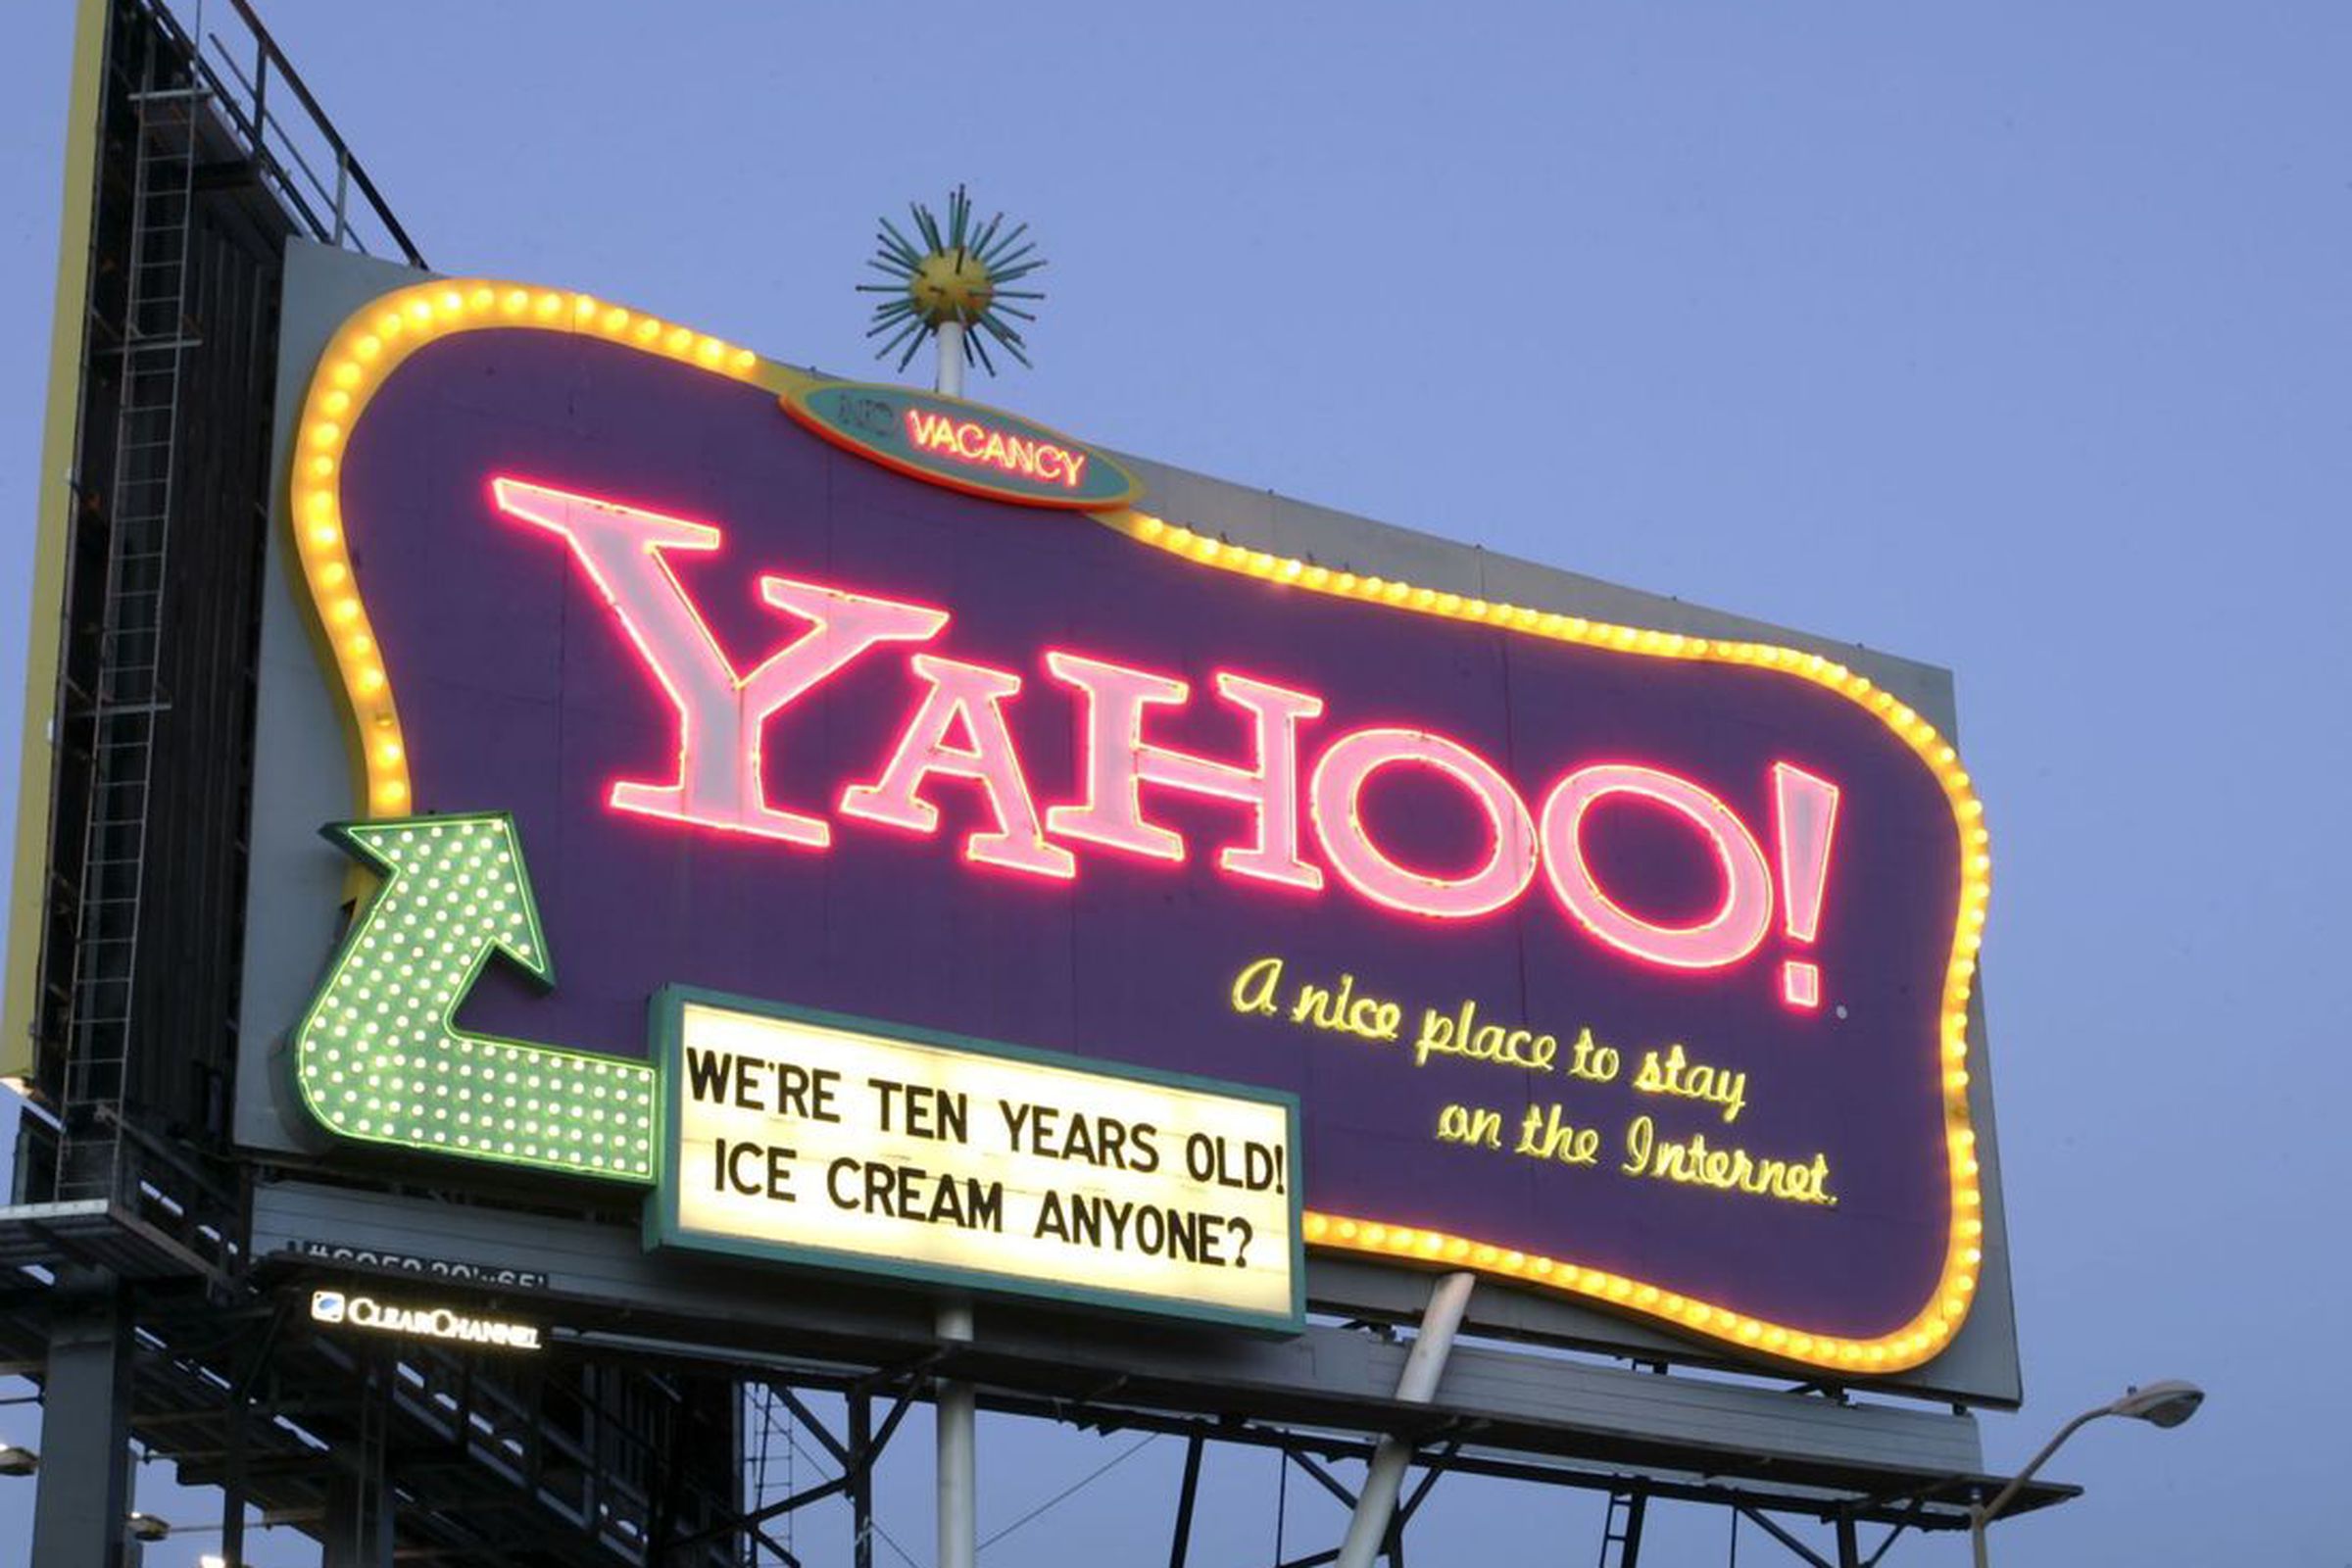 Yahoo billboard